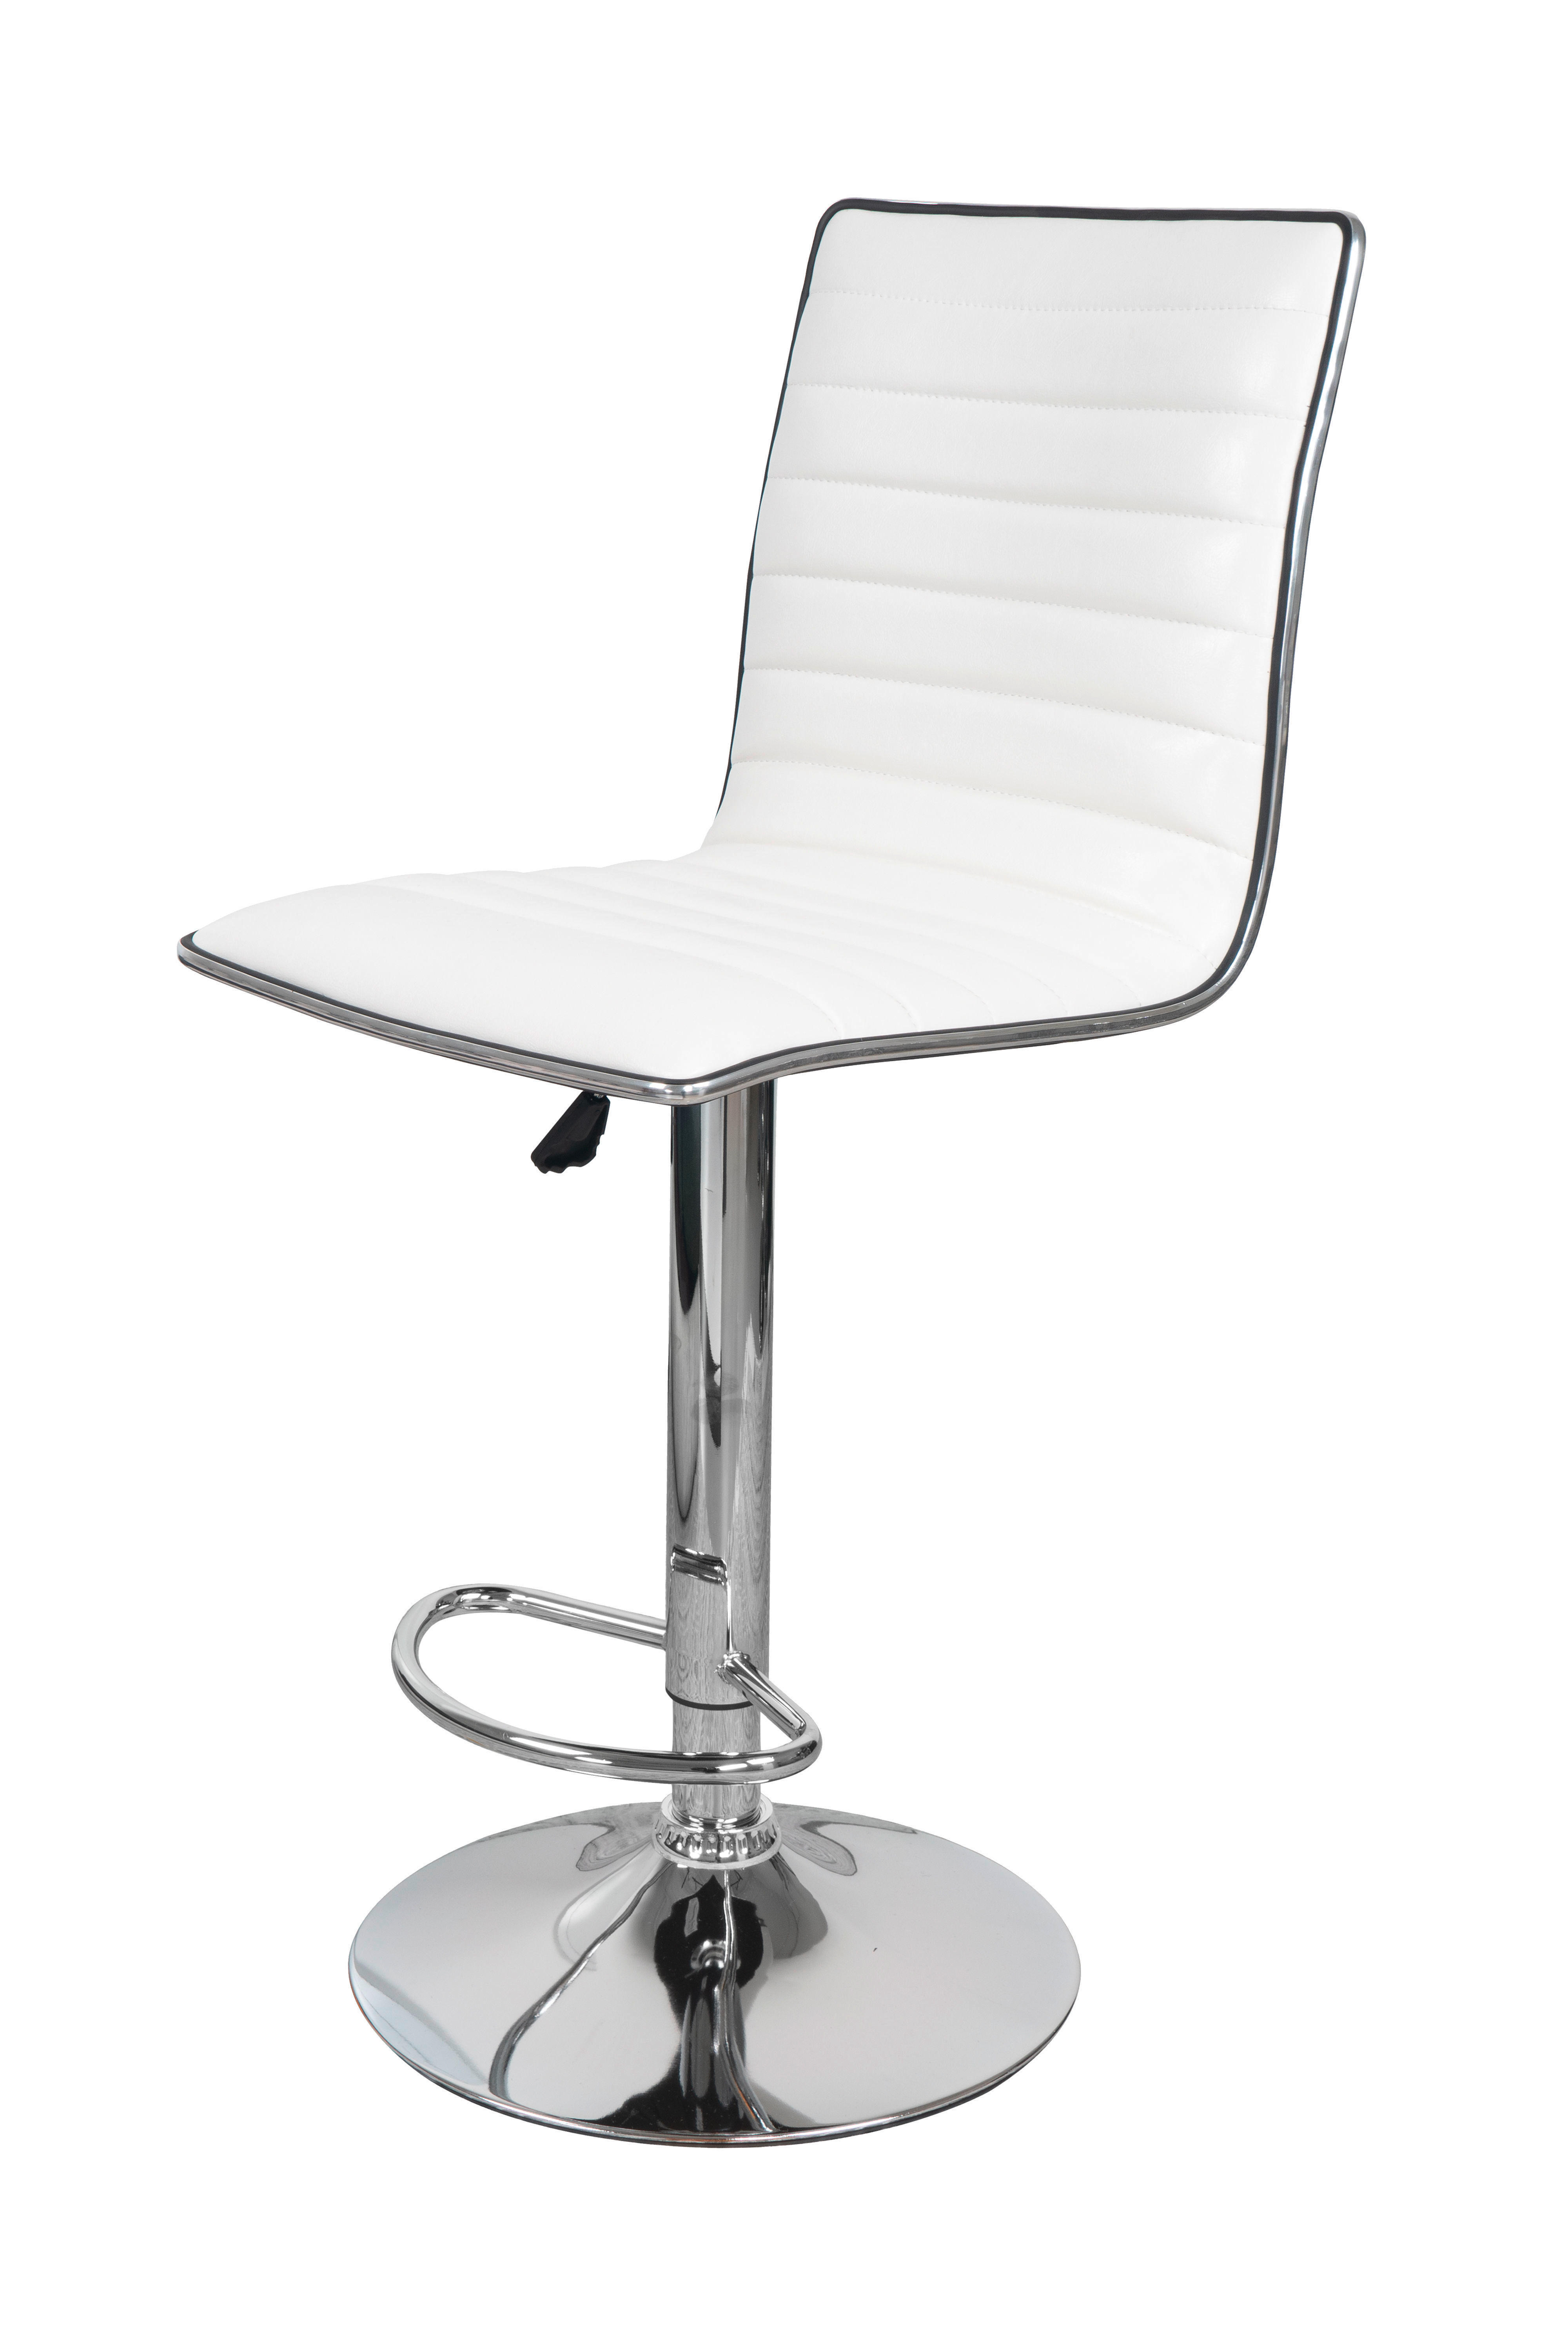 BARHOCKER-SET Silberfarben, Weiß Sitzfläche 360° drehbar, abwischbar  - Silberfarben/Weiß, Design, Holz/Textil (54/116/41cm) - Livetastic